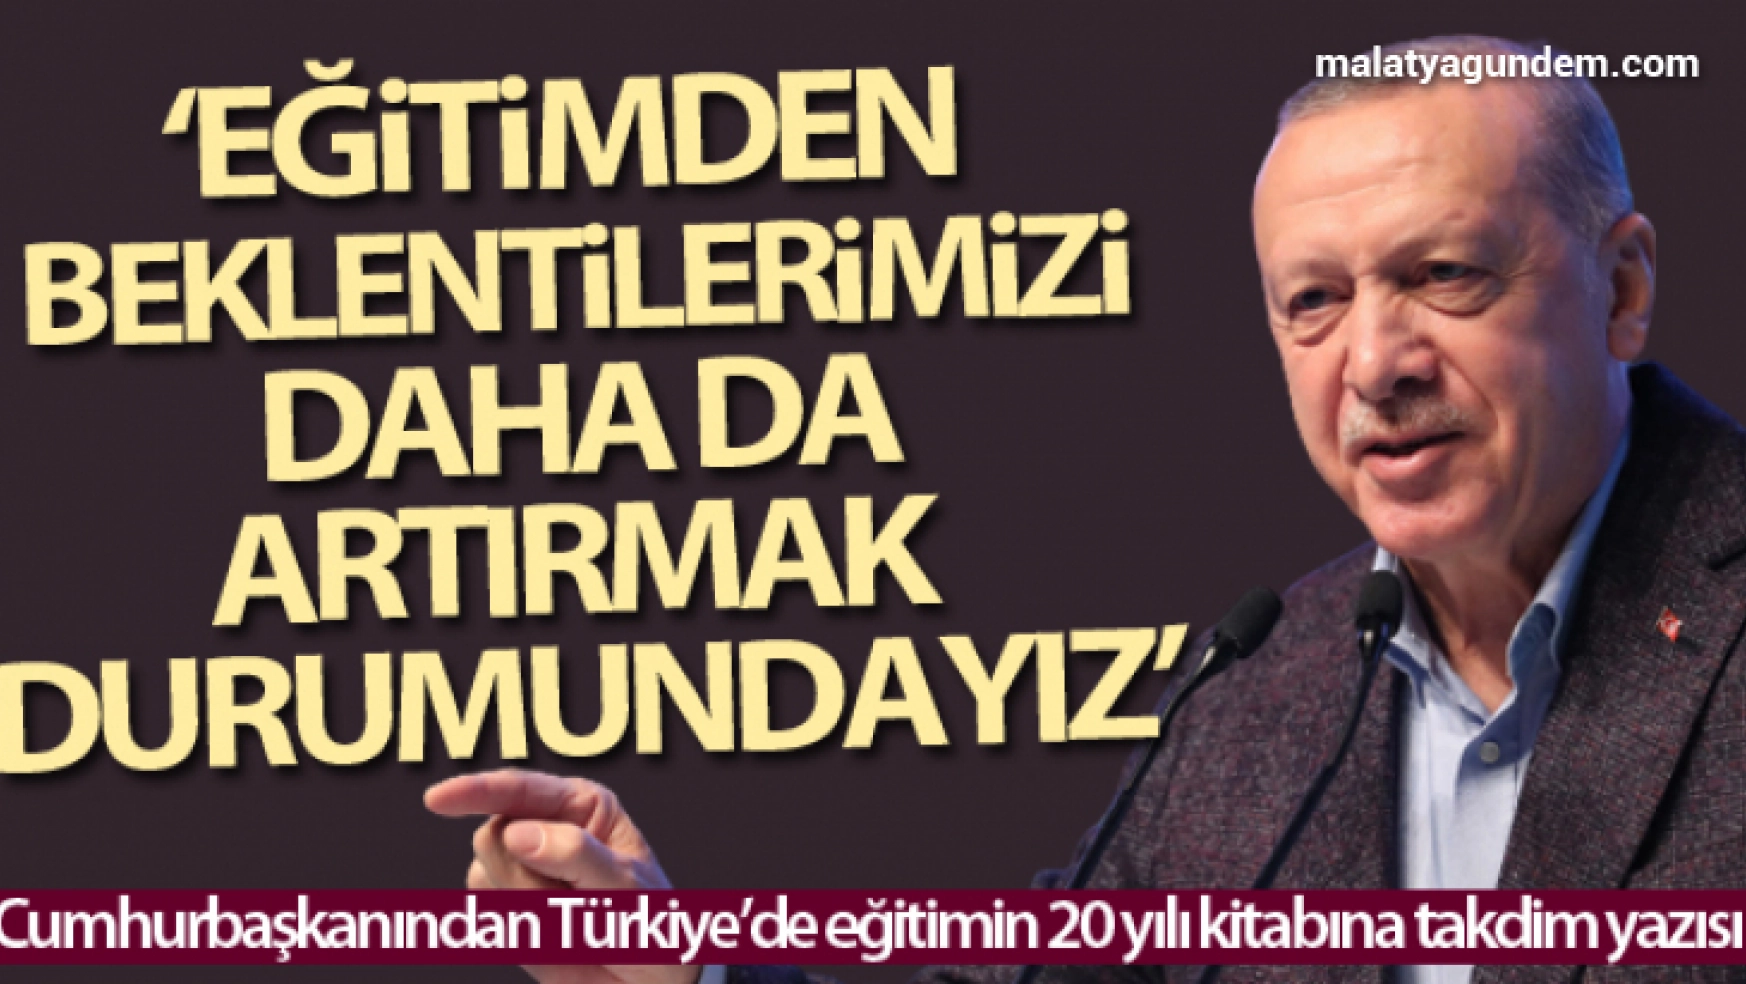 Cumhurbaşkanı Erdoğan: 'Eğitimden beklentilerimizi daha da artırmak durumundayız'